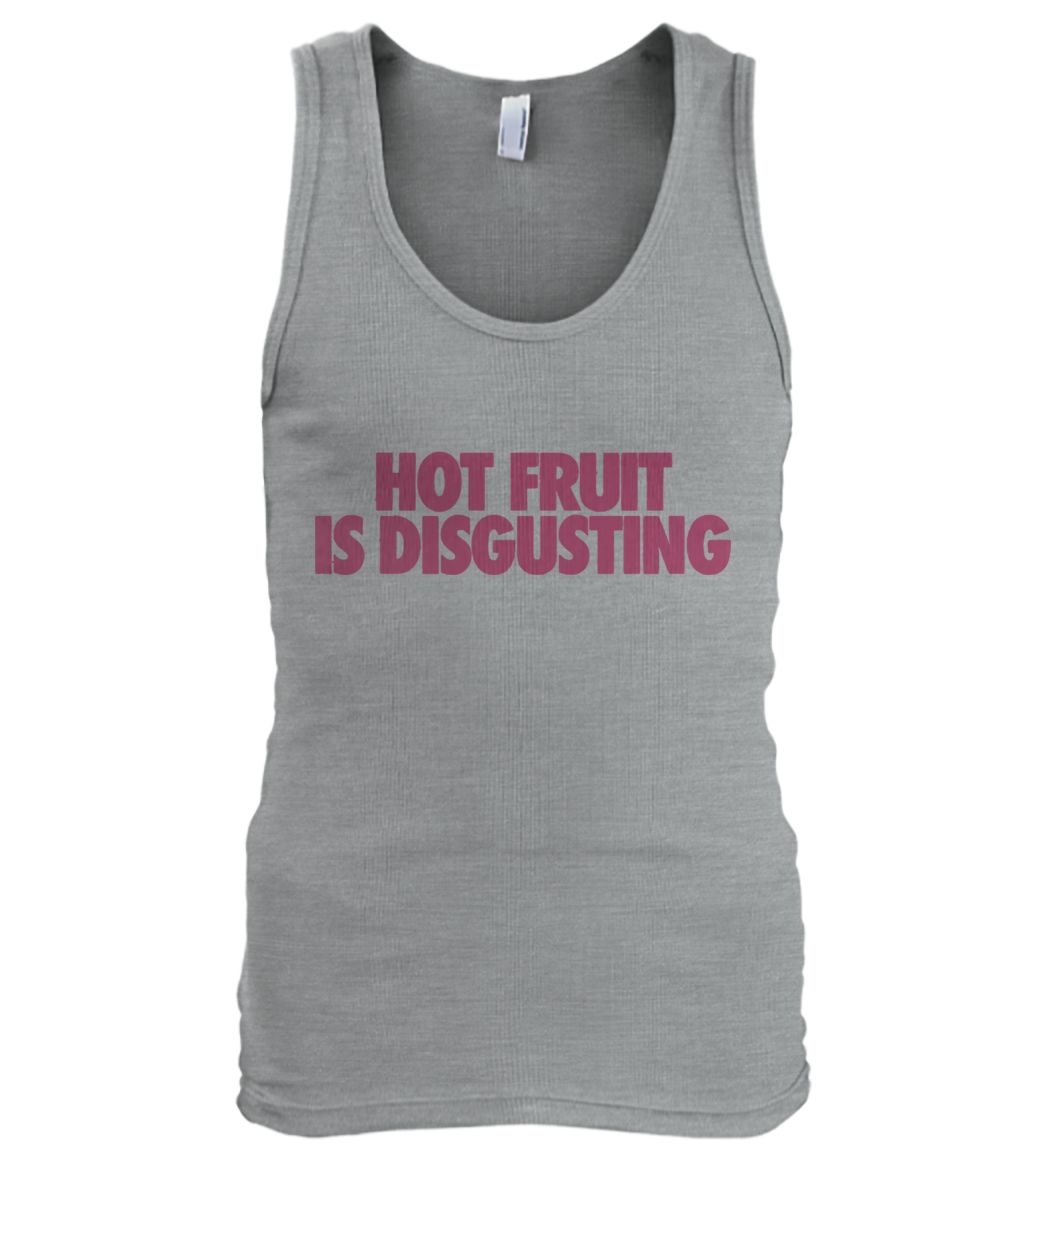 Hot fruit is disgusting men's tank top